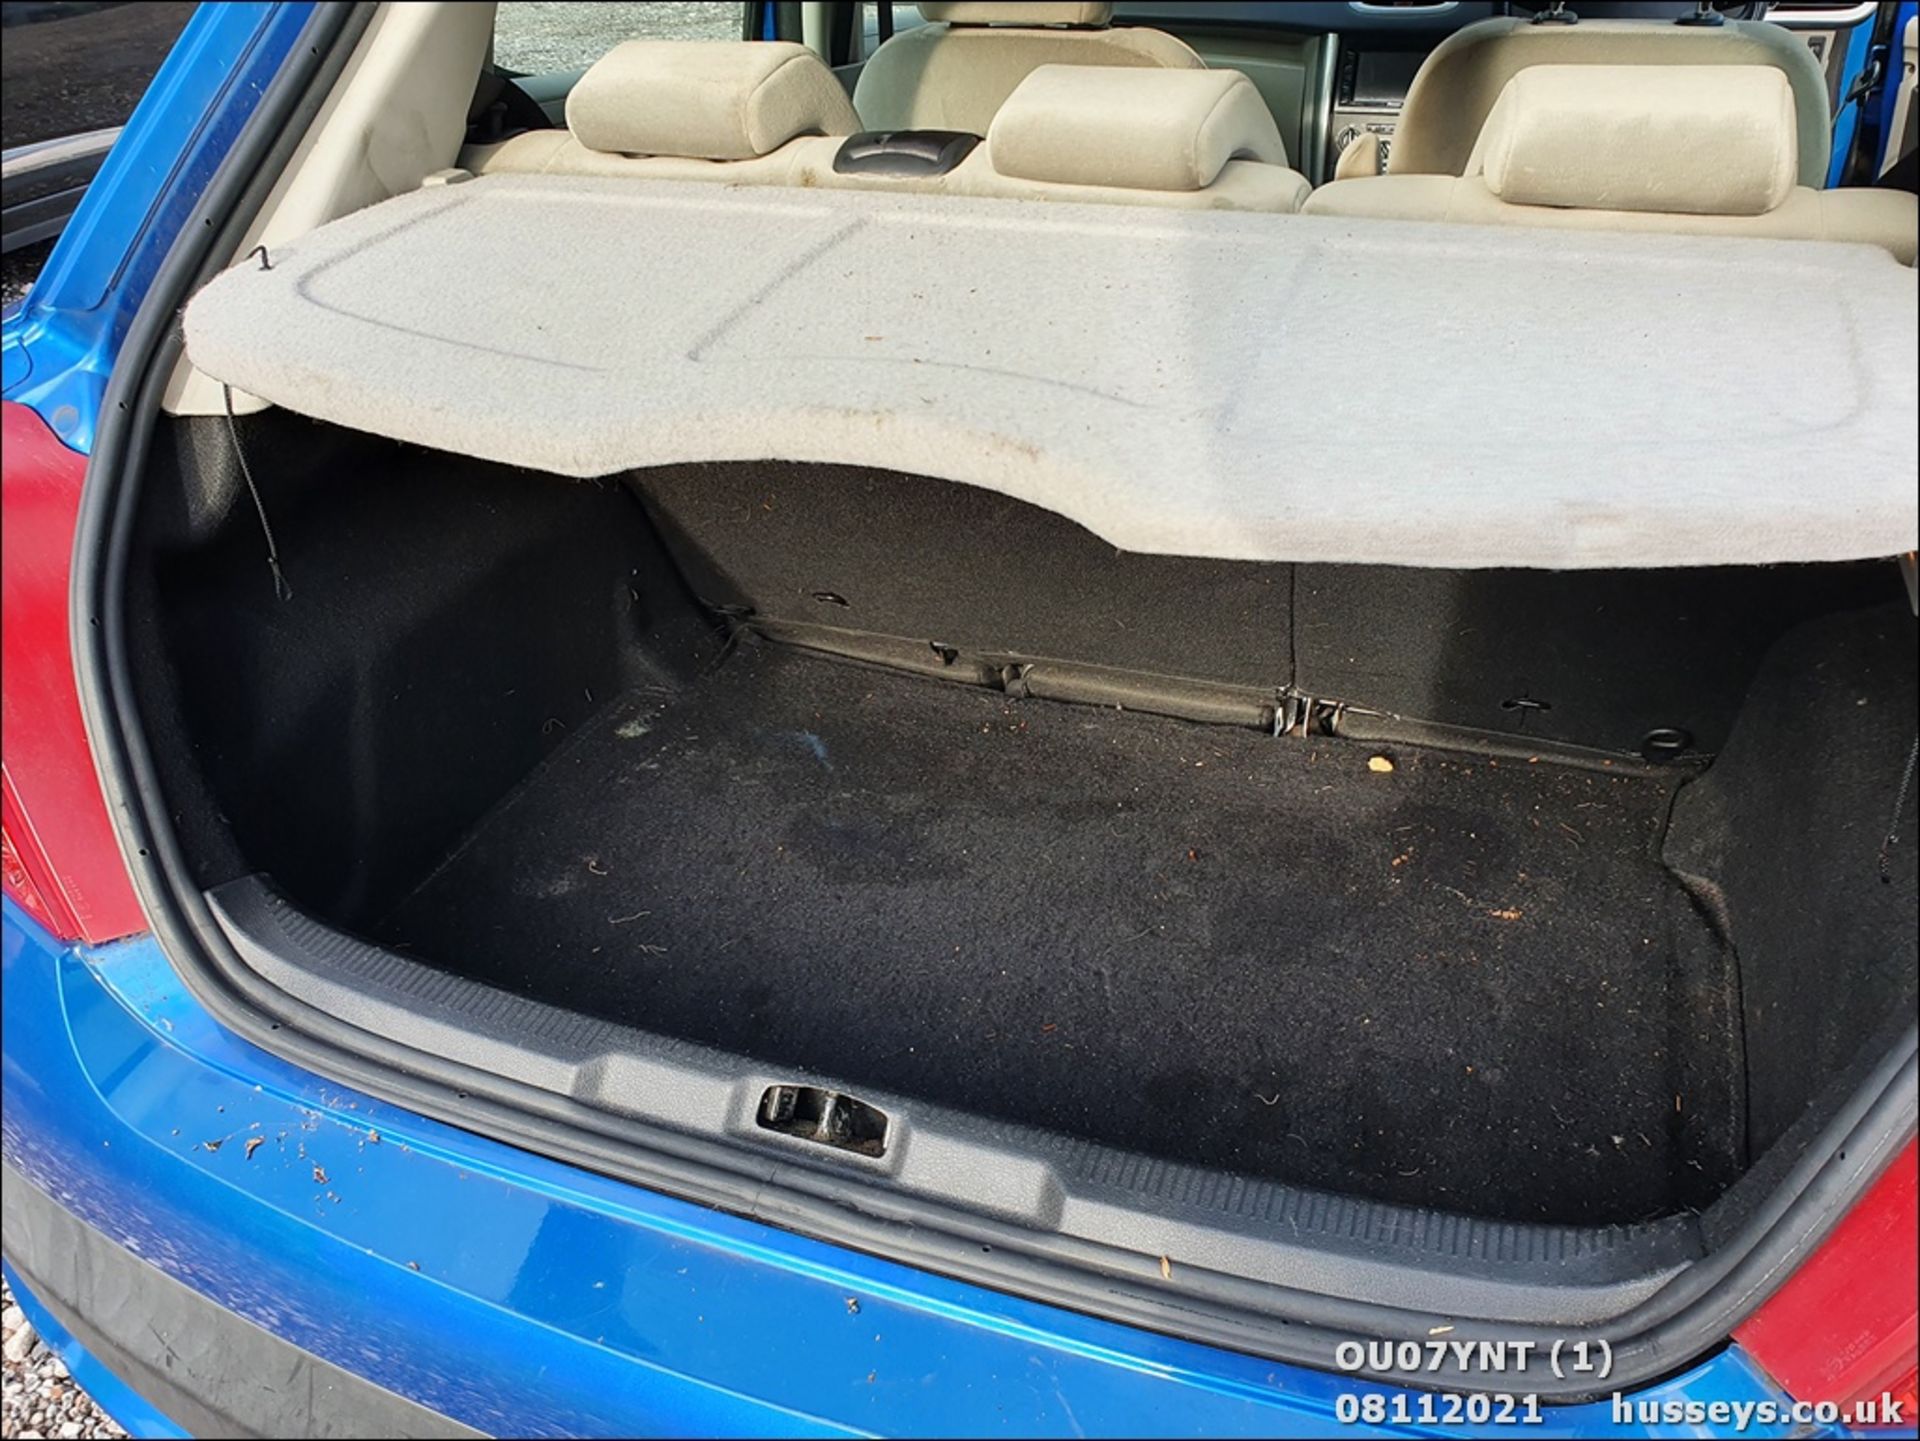 07/07 PEUGEOT 207 SE AUTO - 1598cc 5dr Hatchback (Blue, 97k) - Image 10 of 11